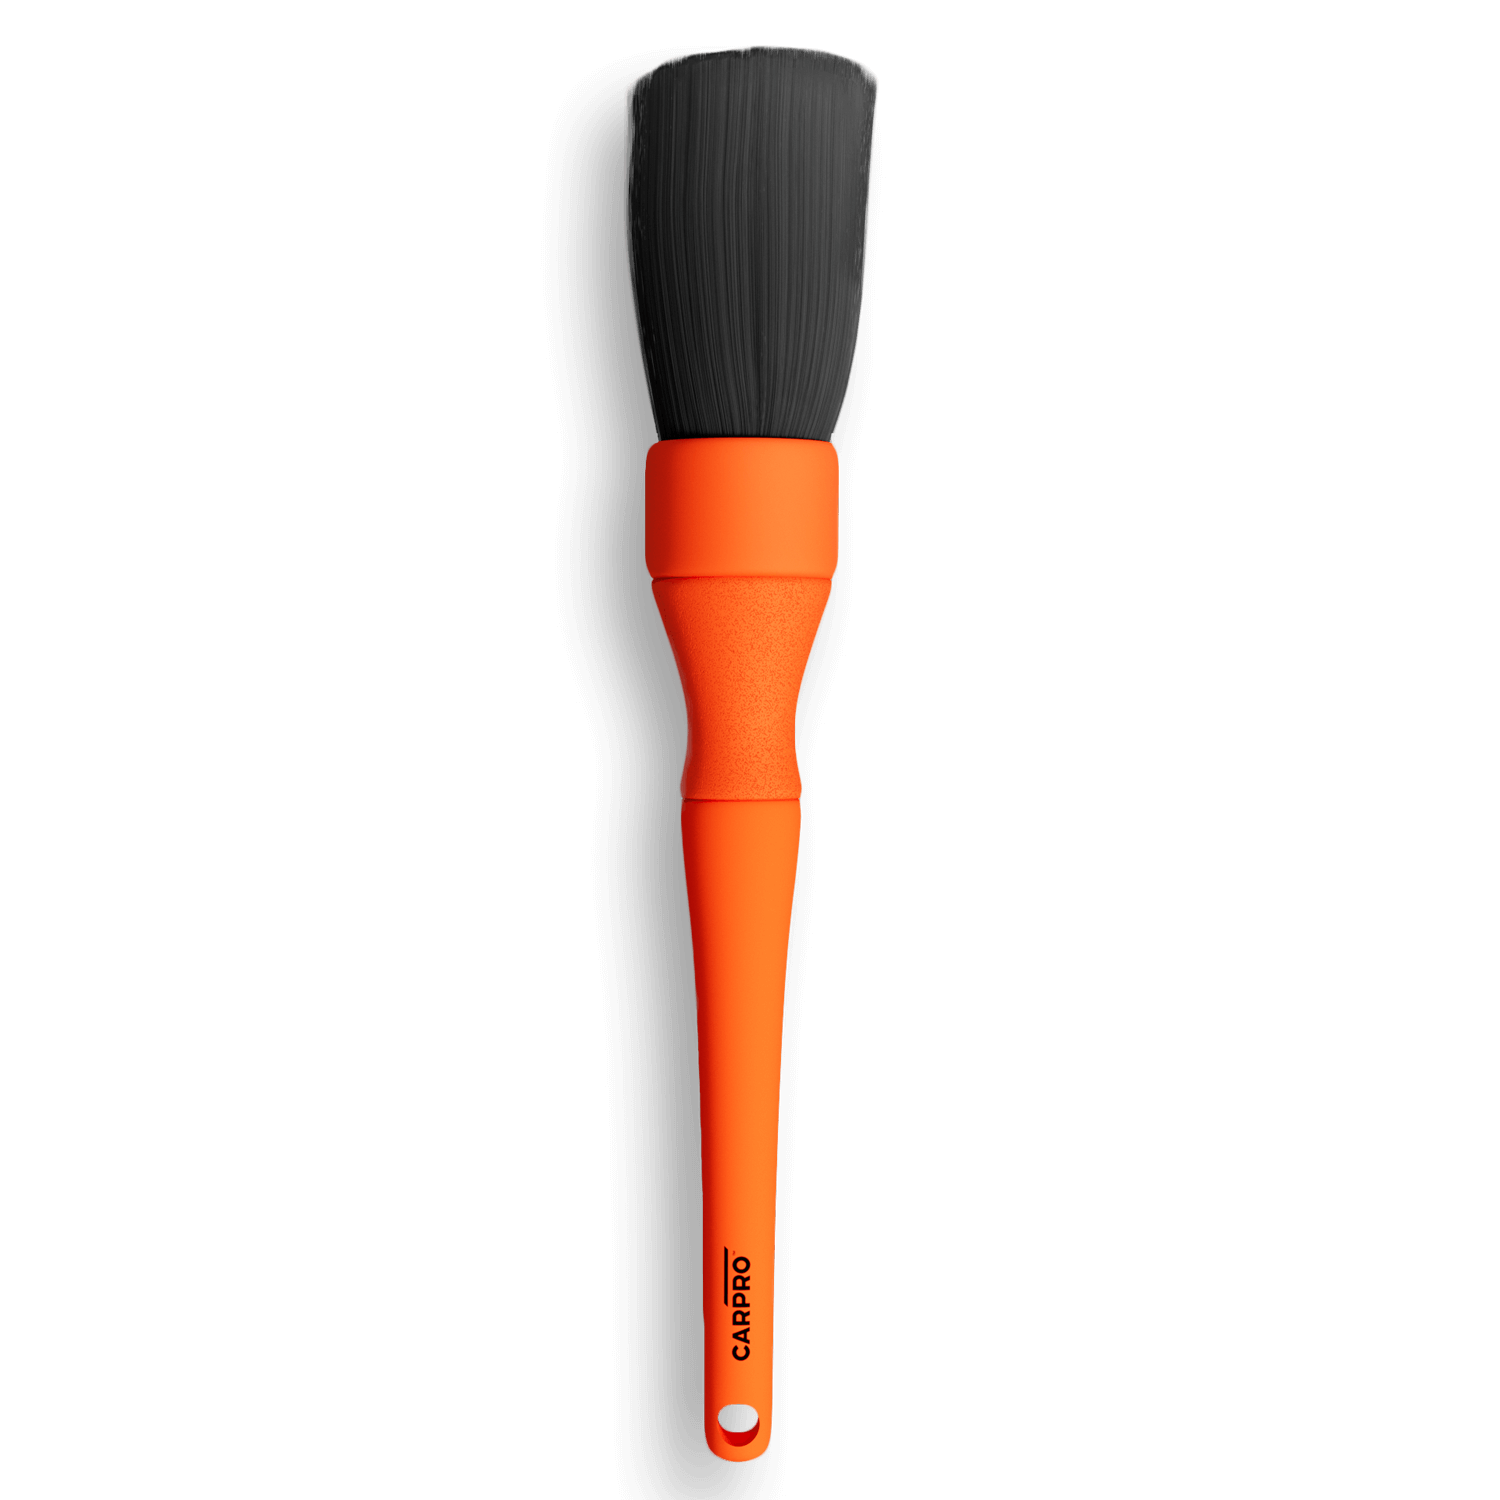 Carpro XL Detailing Brush